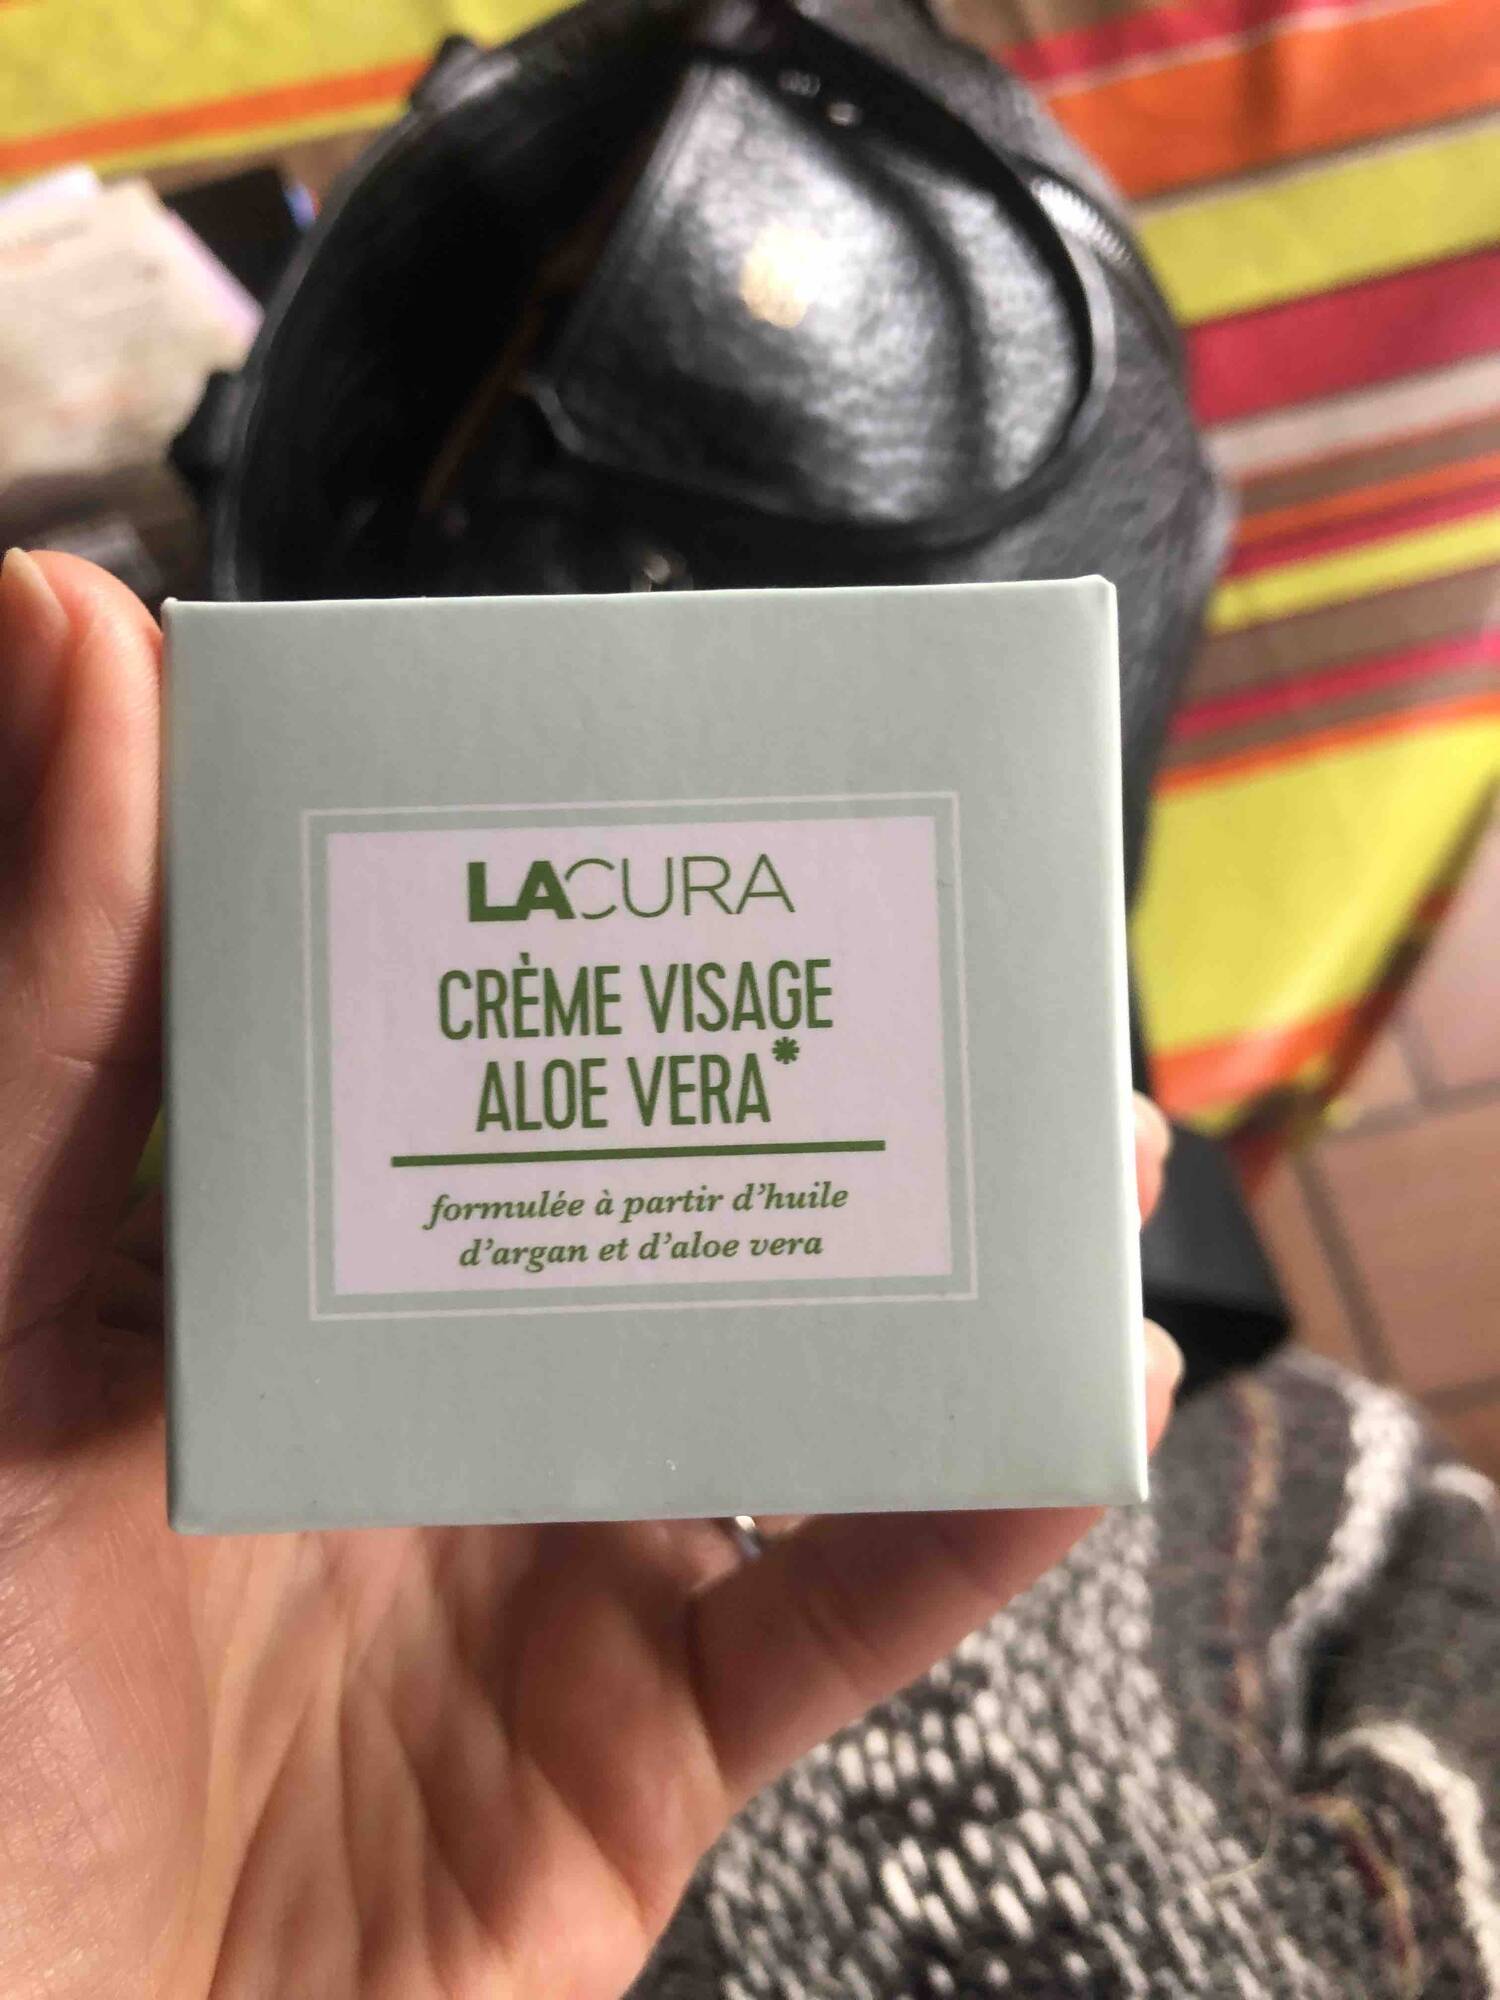 LACURA - Crème visage aloe vera